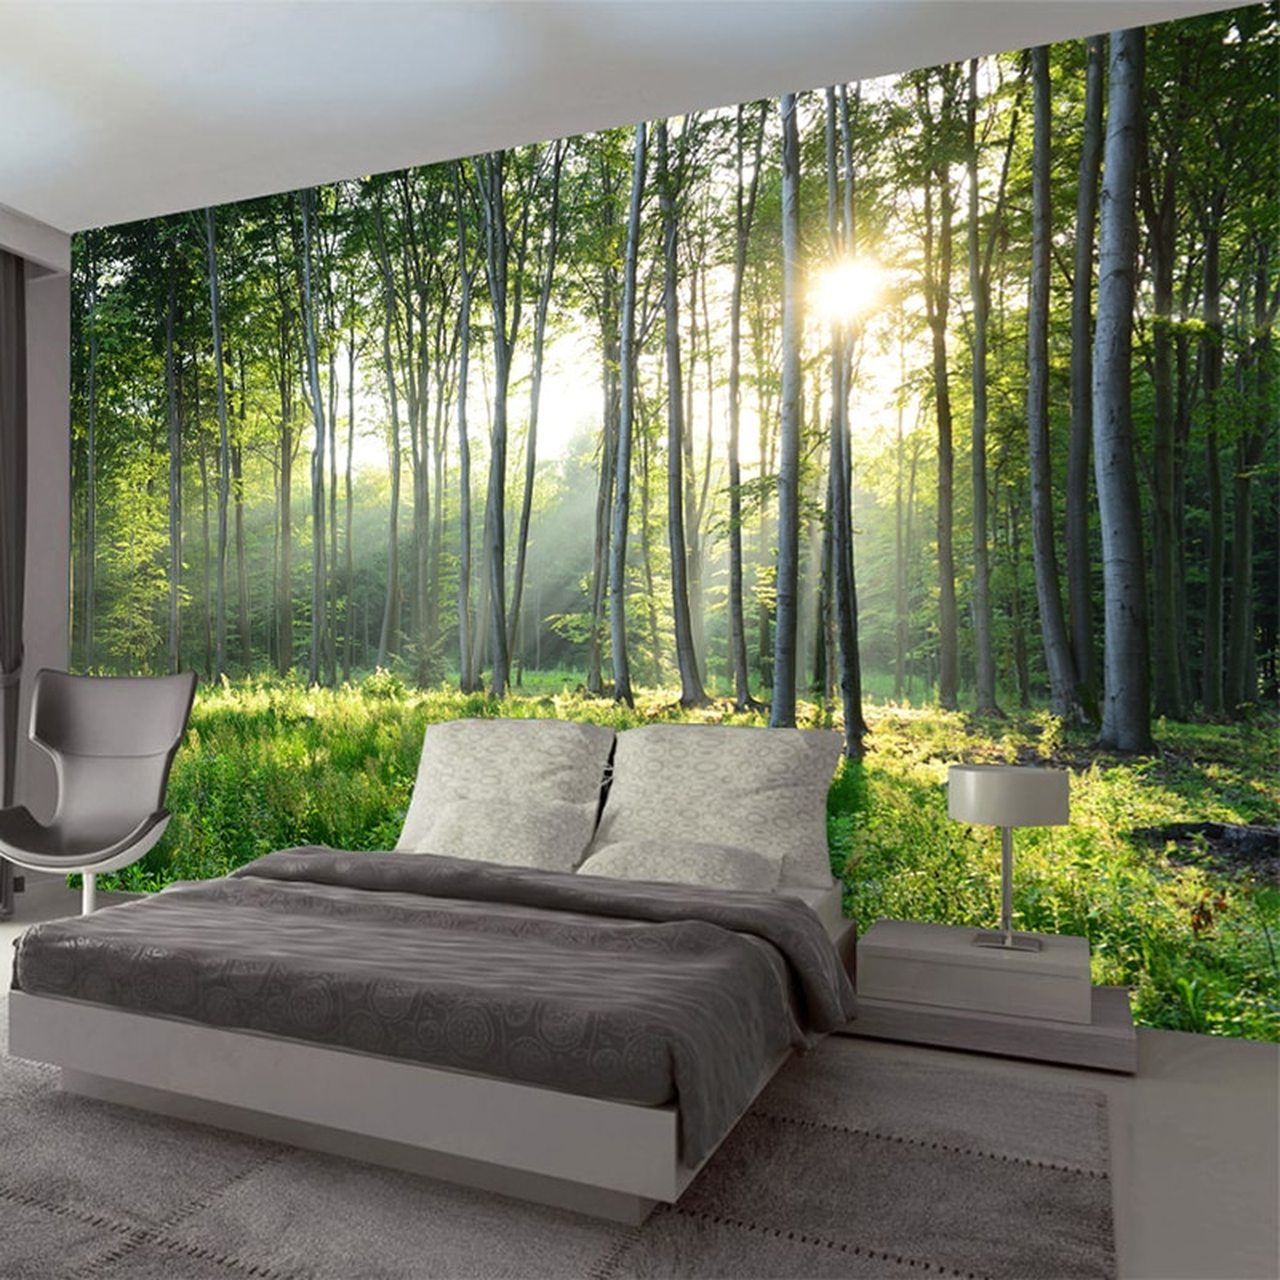 緑の壁紙リビングルーム,自然,自然の風景,壁,木,家具